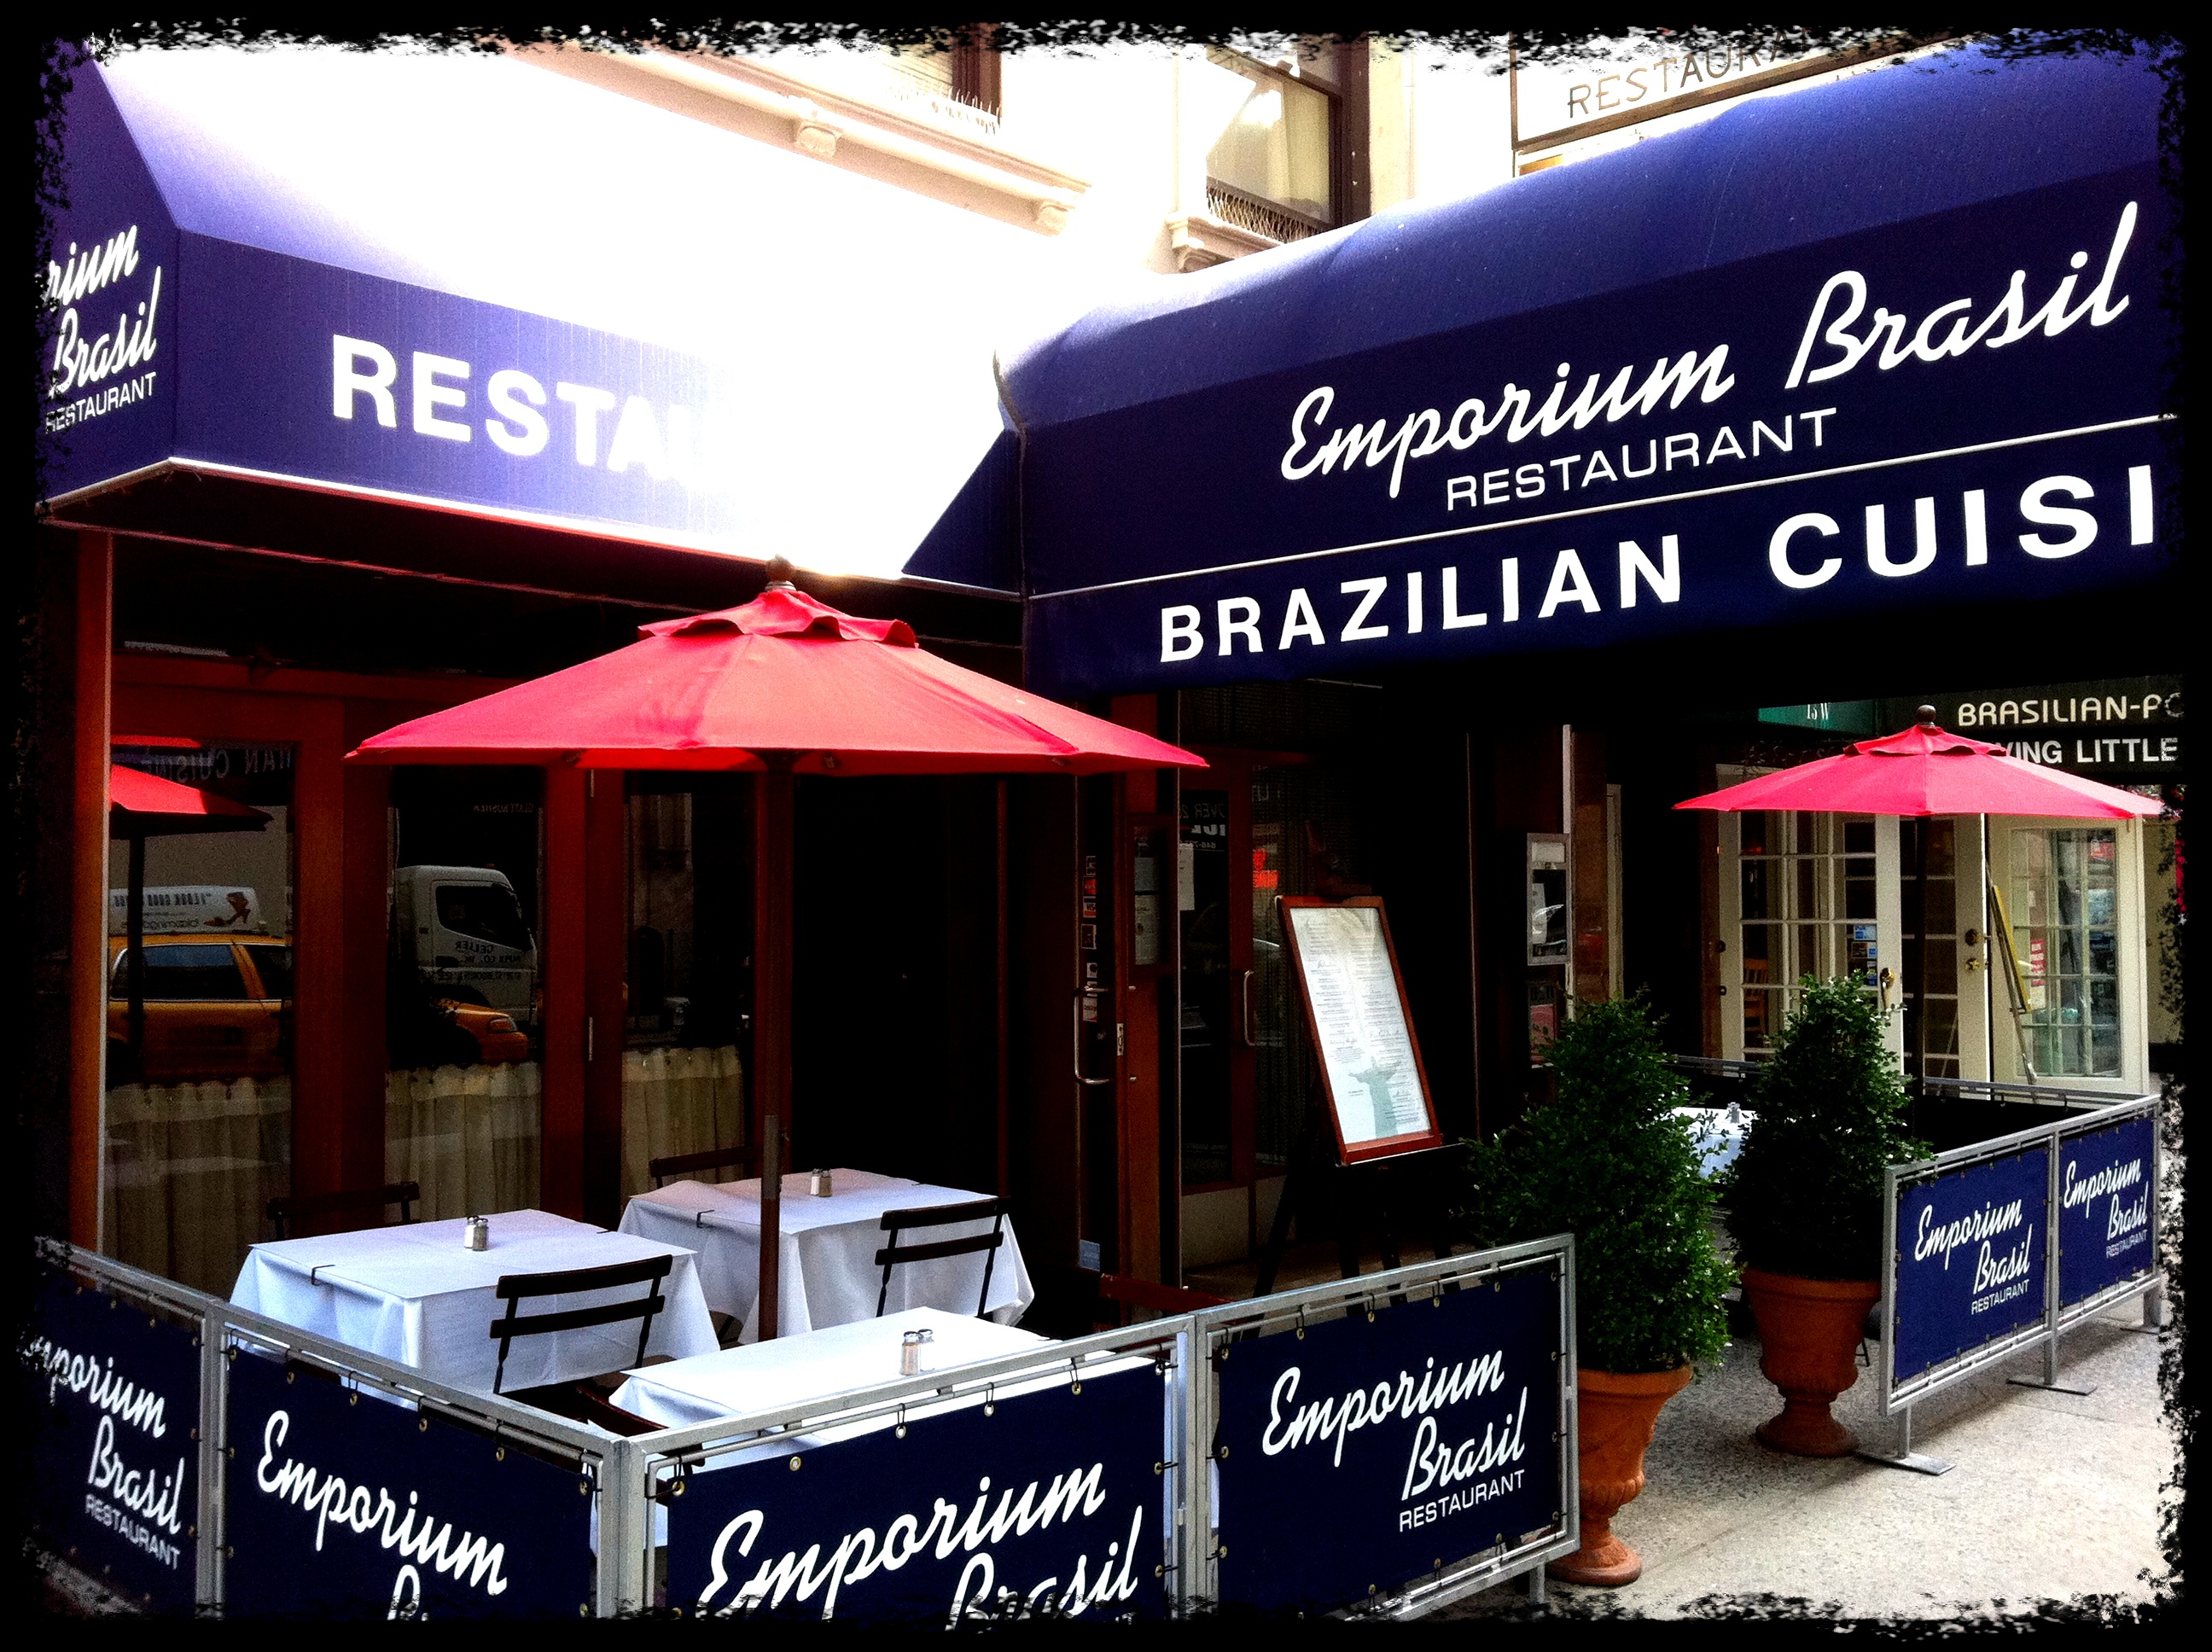 Best restaurant near me in manhattan nyc | Emporium Brasil ...